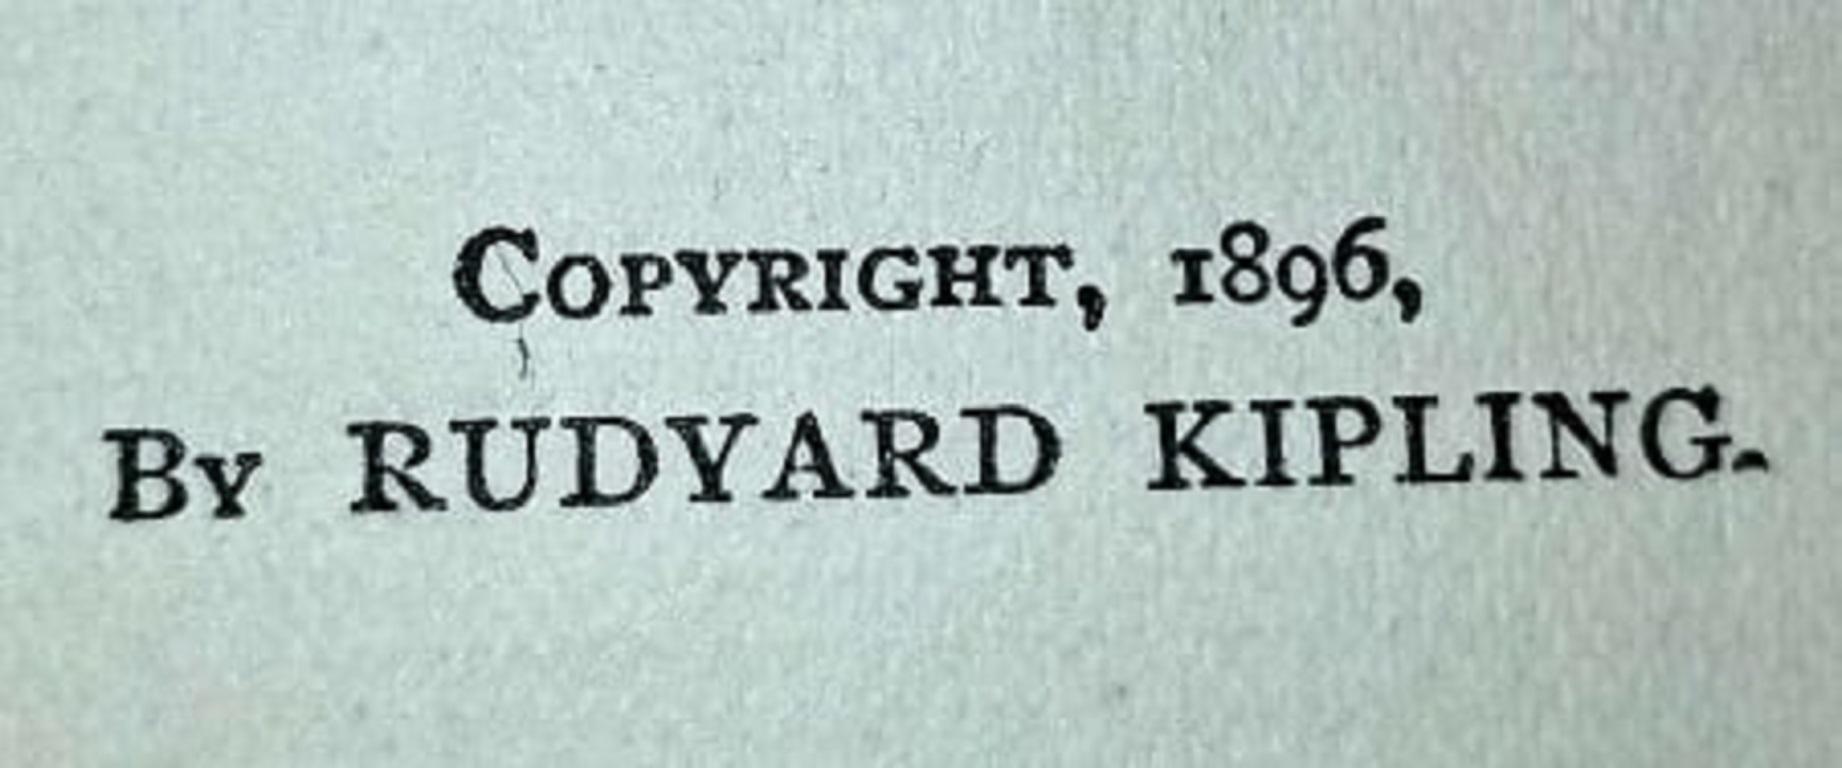 Wir präsentieren eine extrem seltene gebundene Erstausgabe von The Seven Seas von Rudyard Kipling aus dem Jahr 1897.

Dieses seltene Buch ist in einem für sein Alter angemessenen bis guten Zustand.... Einige sehr kleine 